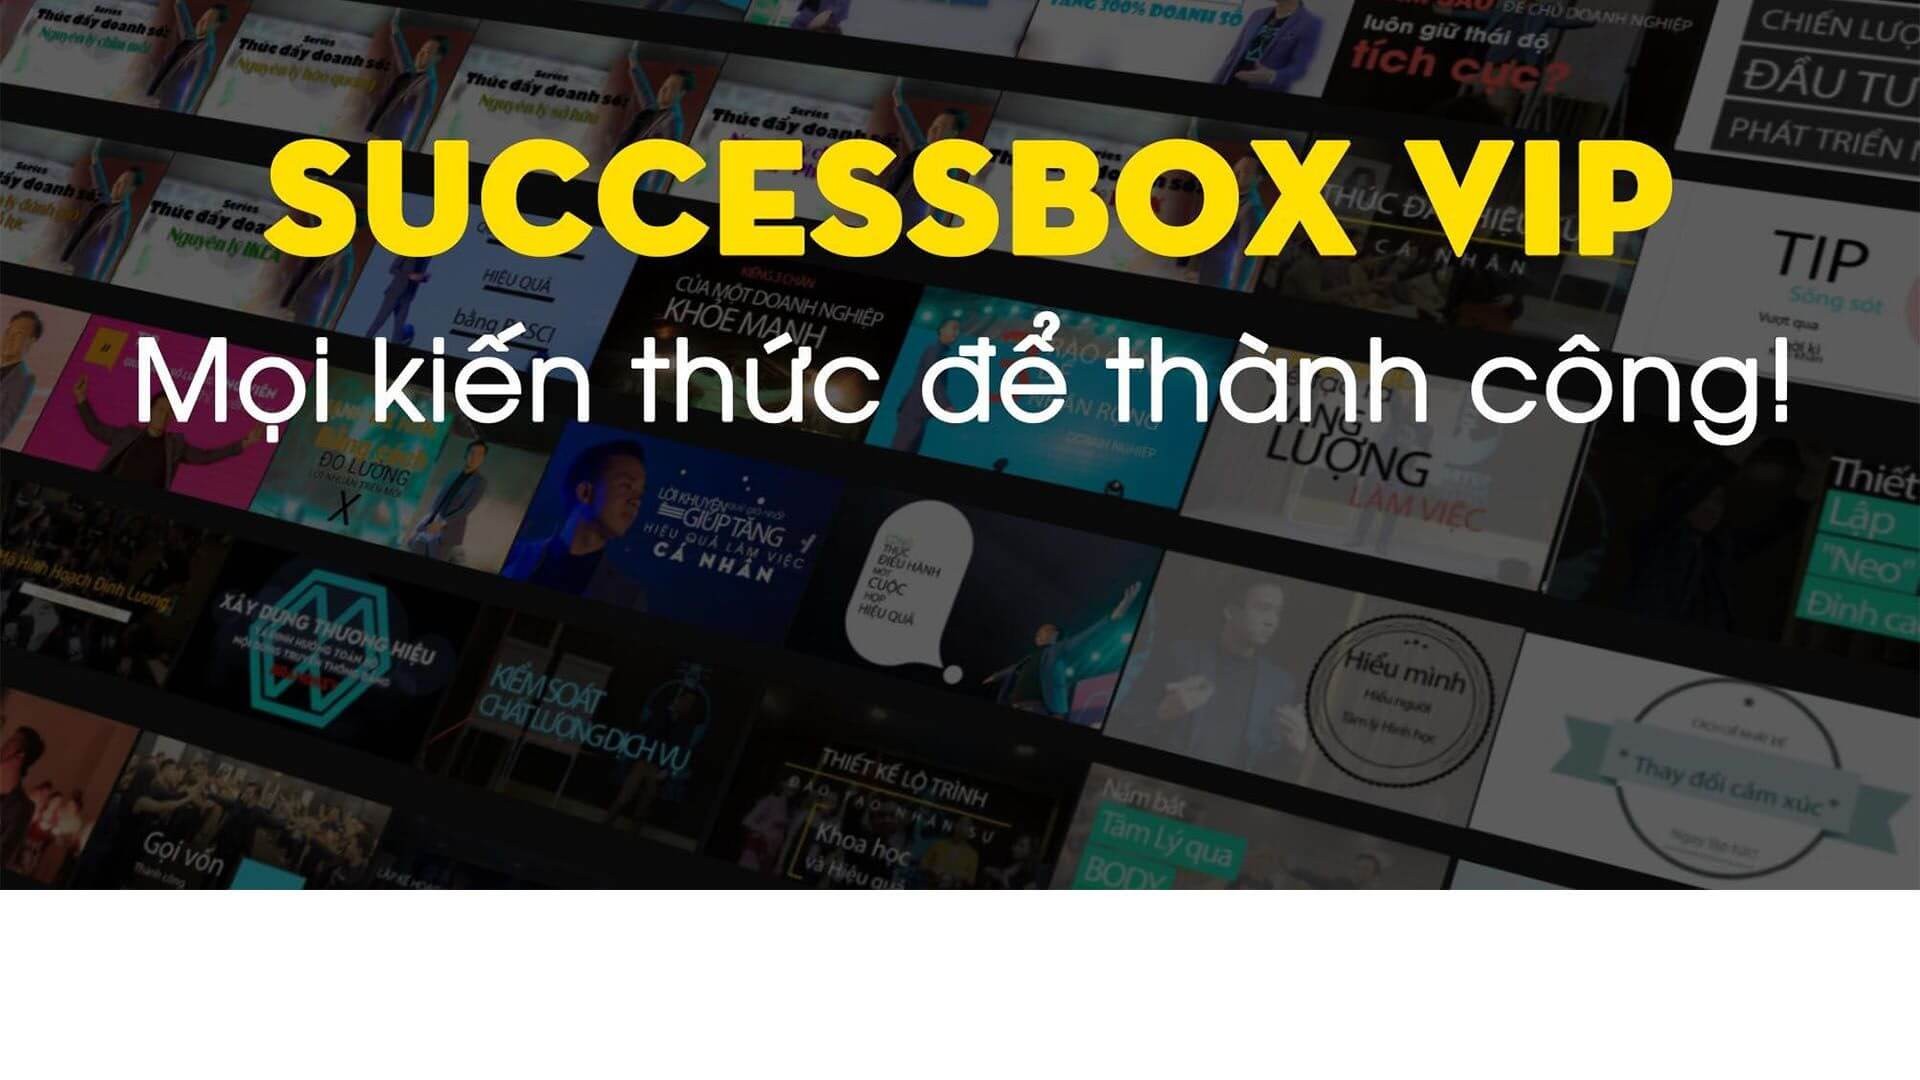 Success Box – Chiếc hộp gói gọn 10 năm kinh doanh thành công của Doanh nhân Tạ Minh Tuấn